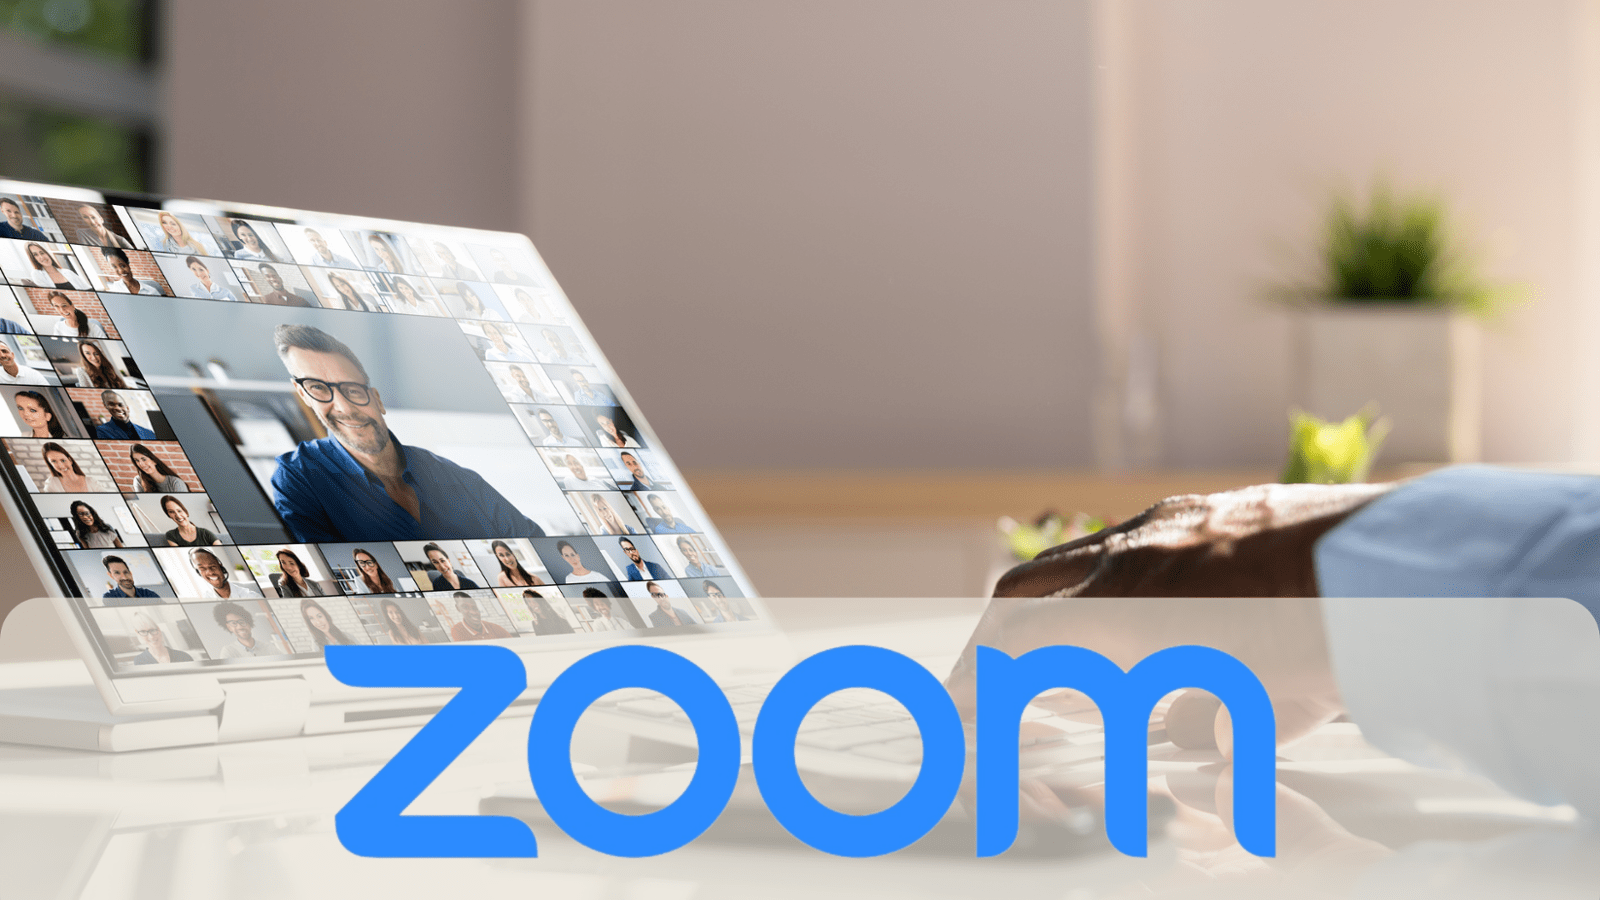 Zoom.us Un Partenaire Incontournable pour la Collaboration Virtuelle